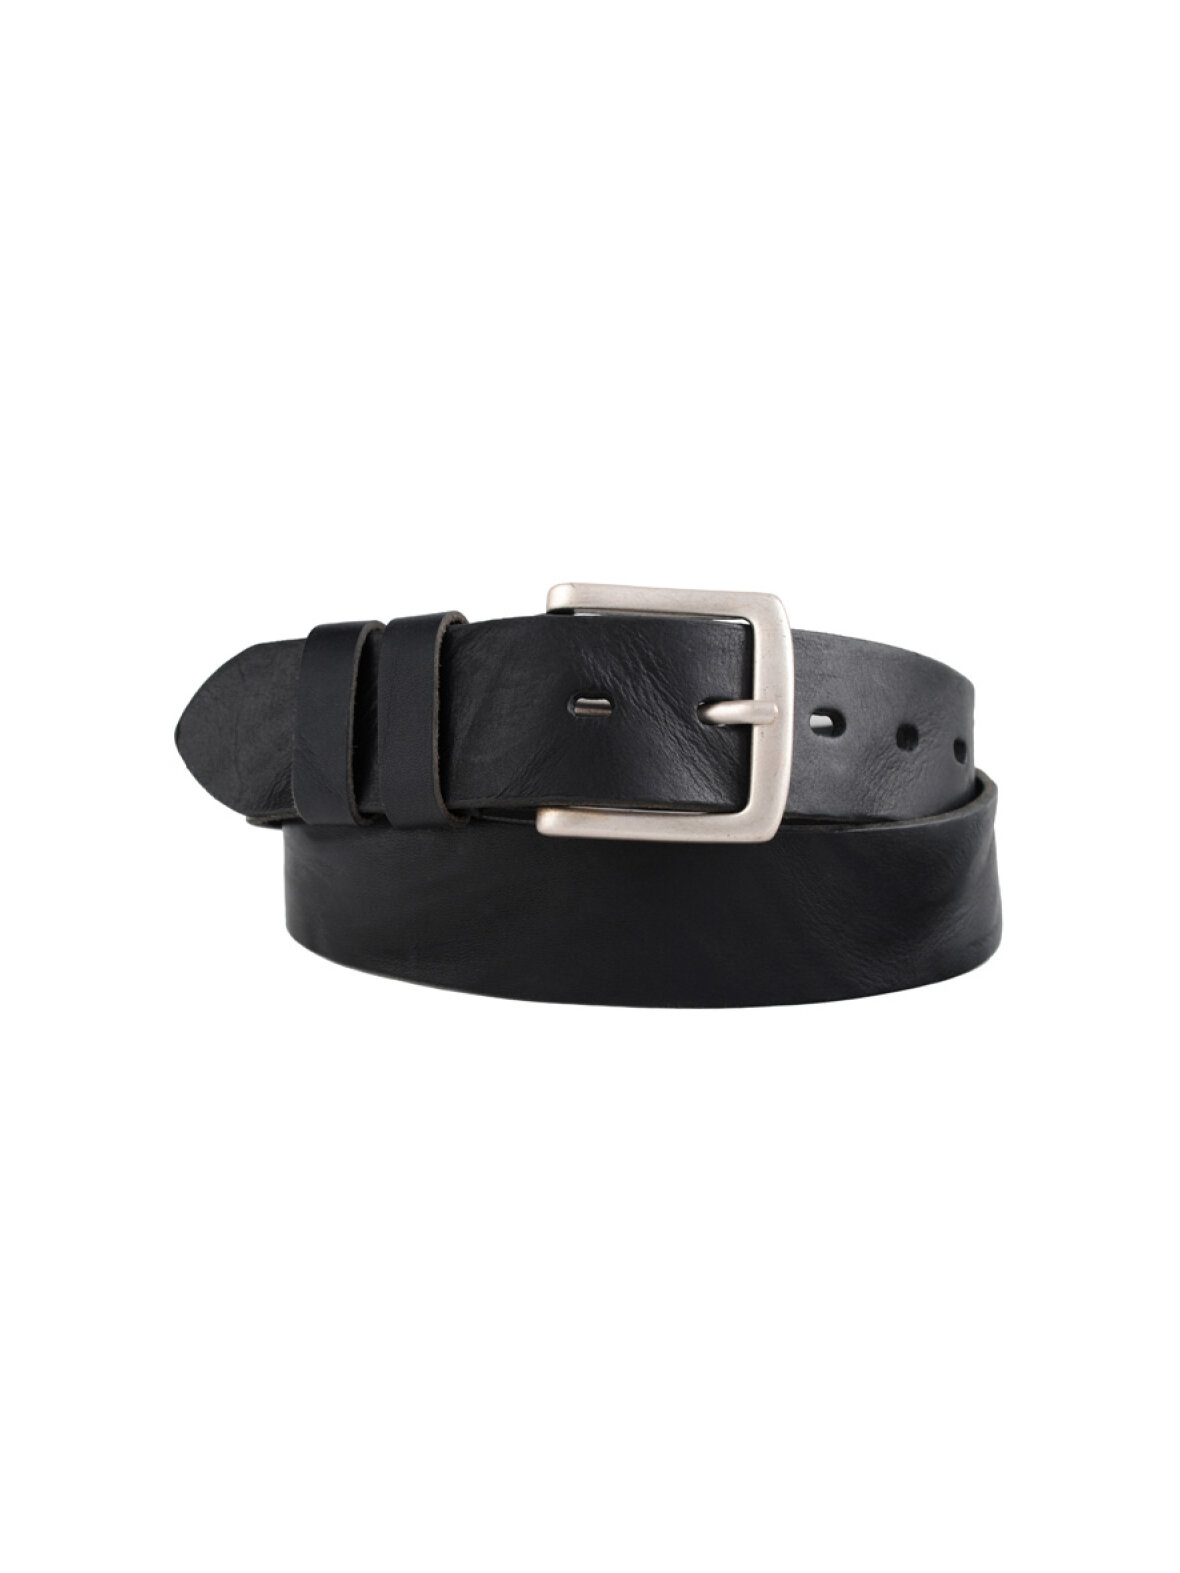 sindsyg Indeholde opnå A'POKE - Bosswik D10041 Leather Belt Black - Shop skind bælte